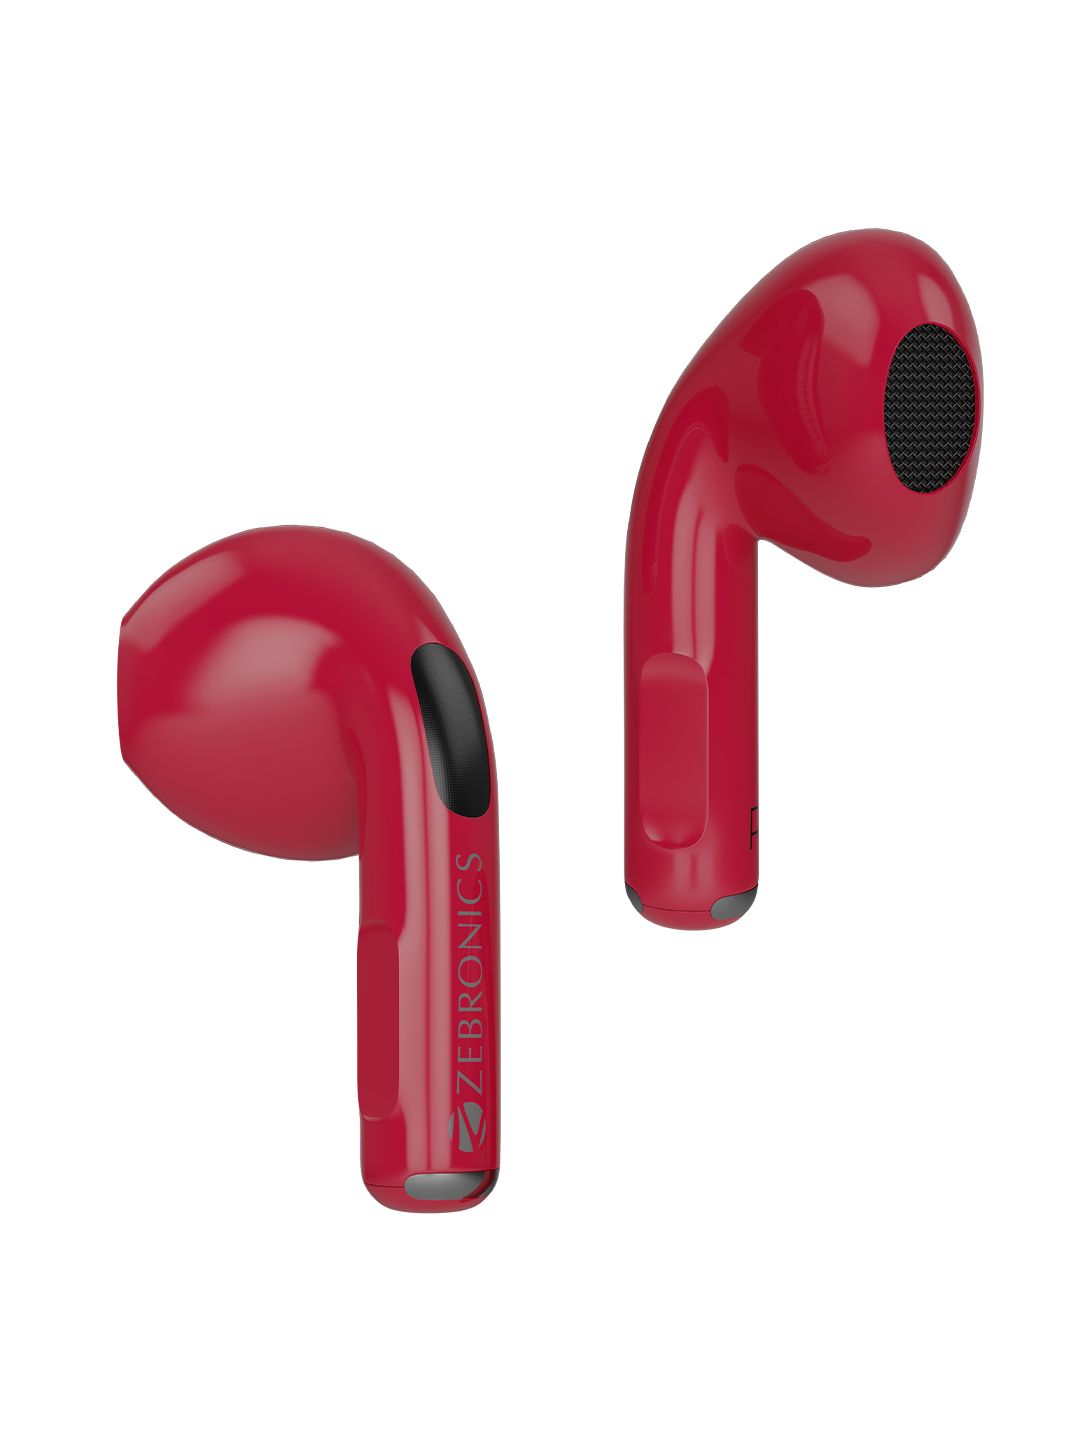 ZEBRONICS Zeb-Sound Bomb 3 TWS Bluetooth Headset  -Red Price in India